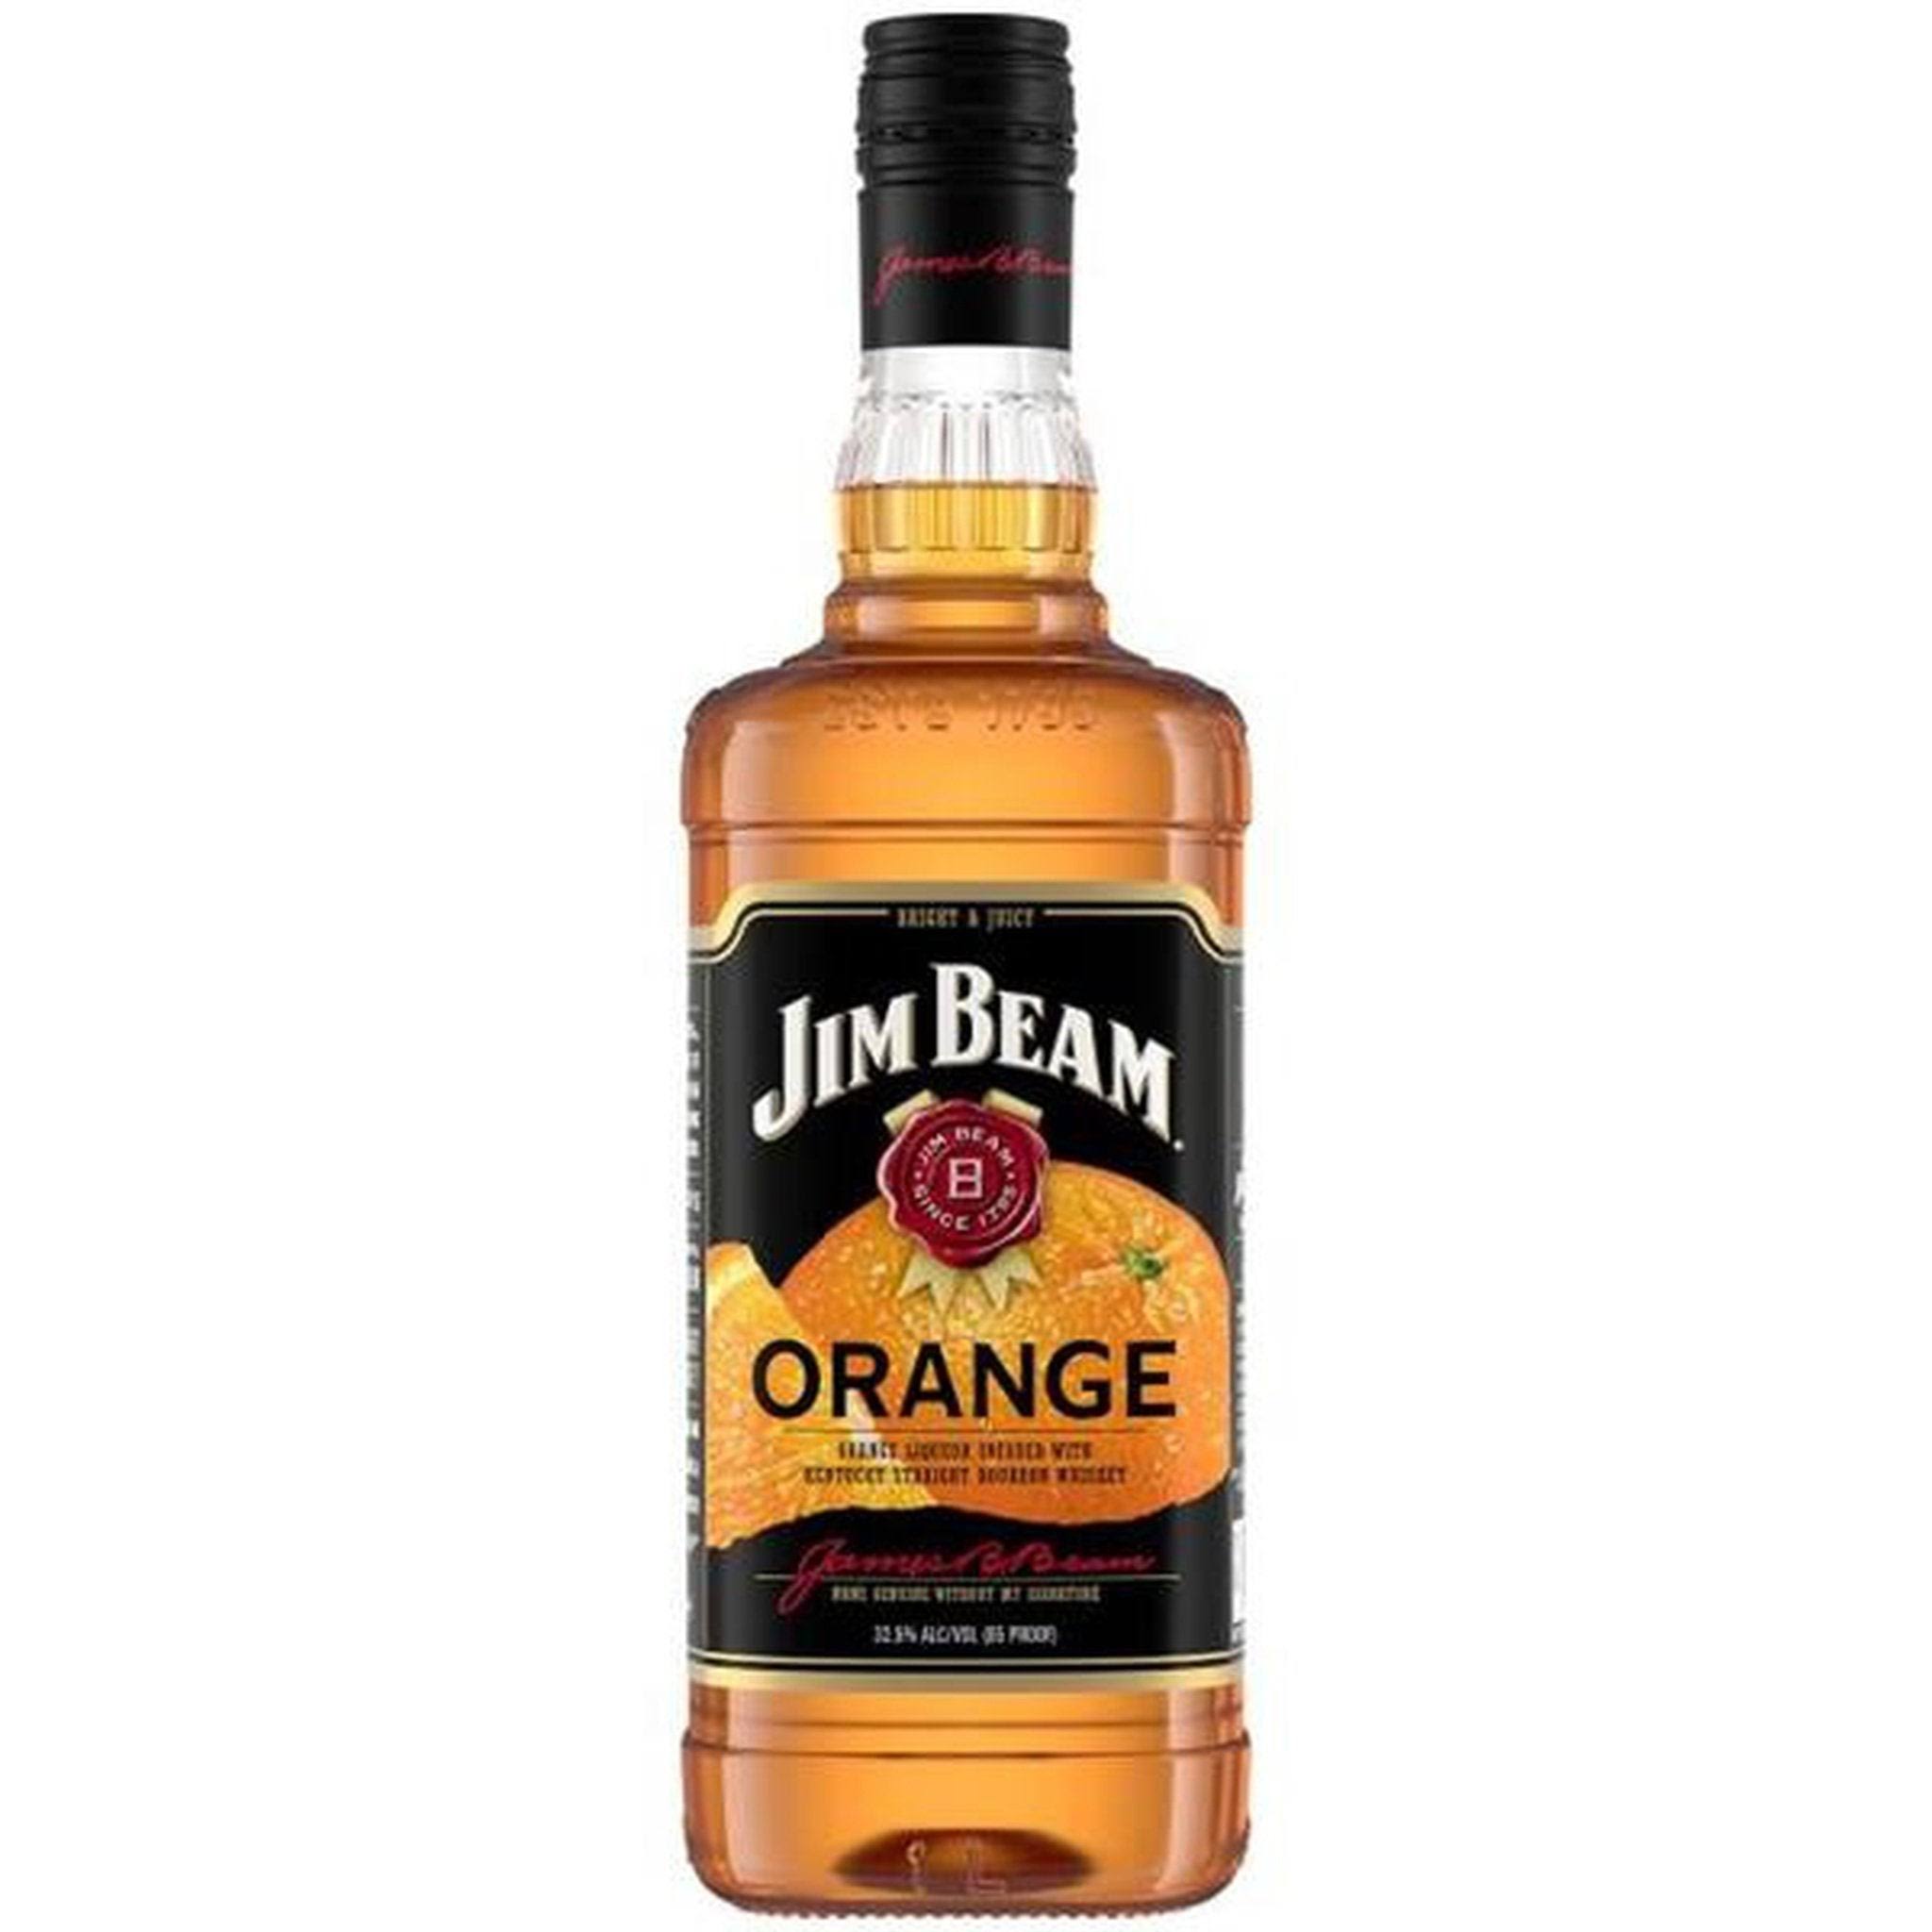 Jim Beam Bourbon Whiskey, Kentucky Straight, Orange - 750 ml